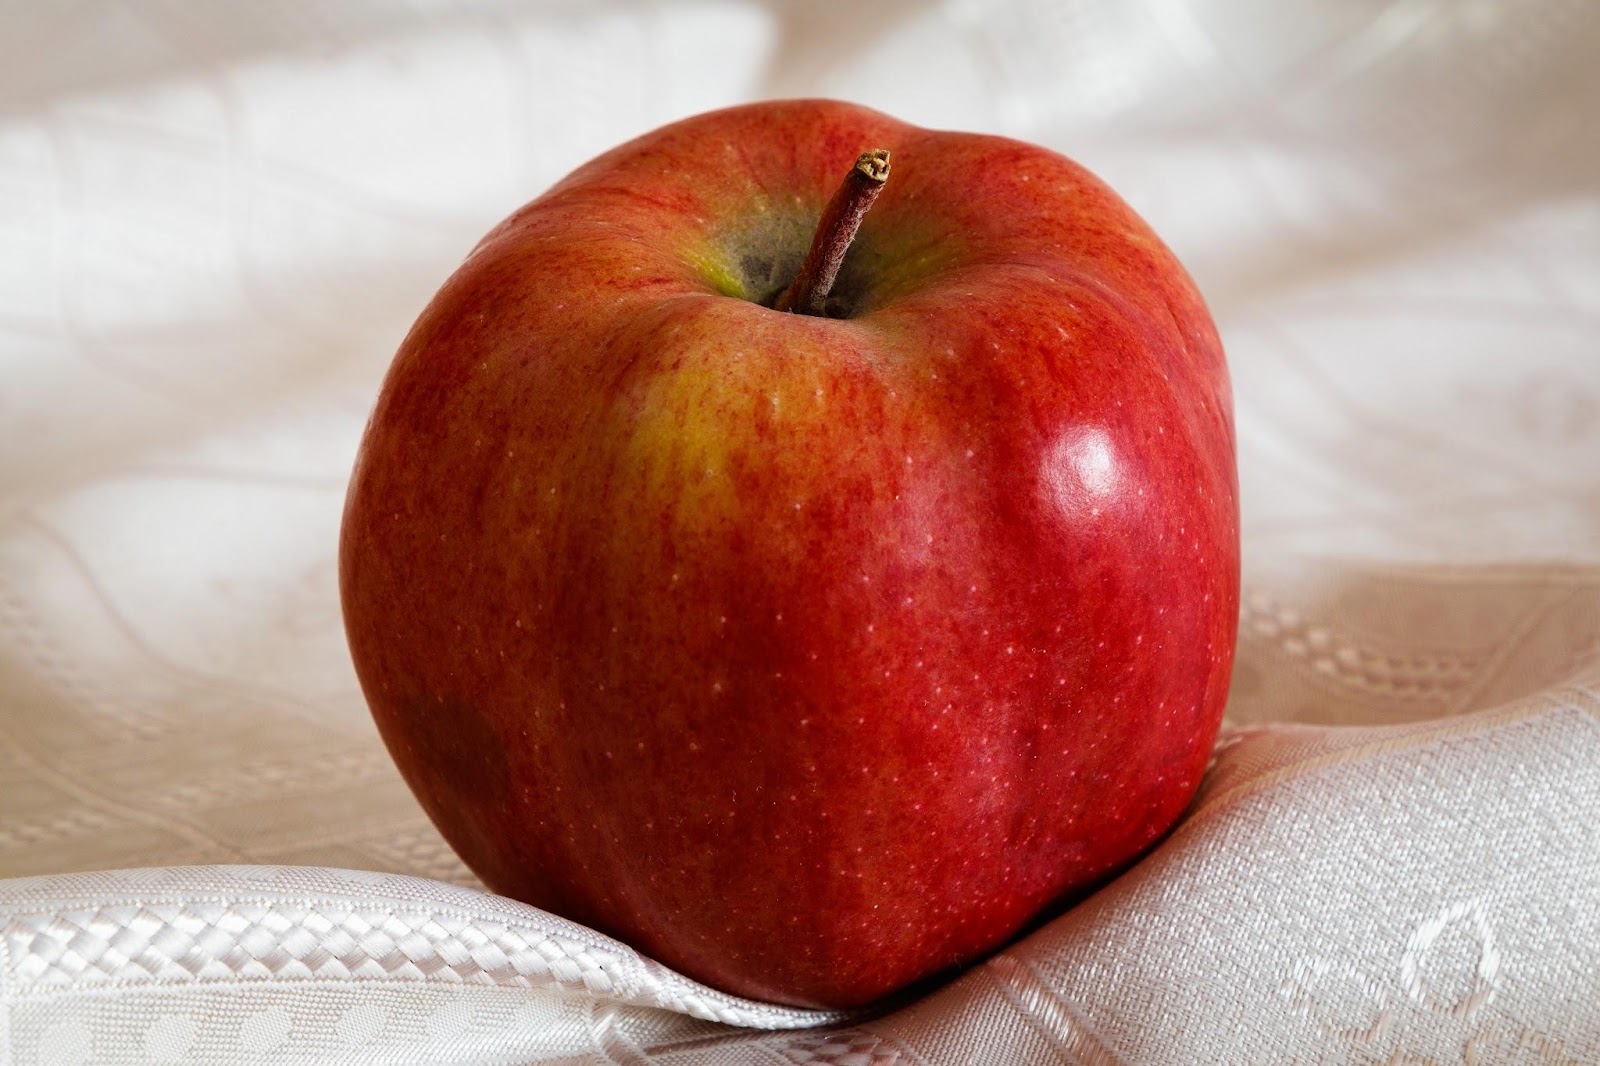 白い布の上に乗った、赤いリンゴ１個の画像です。